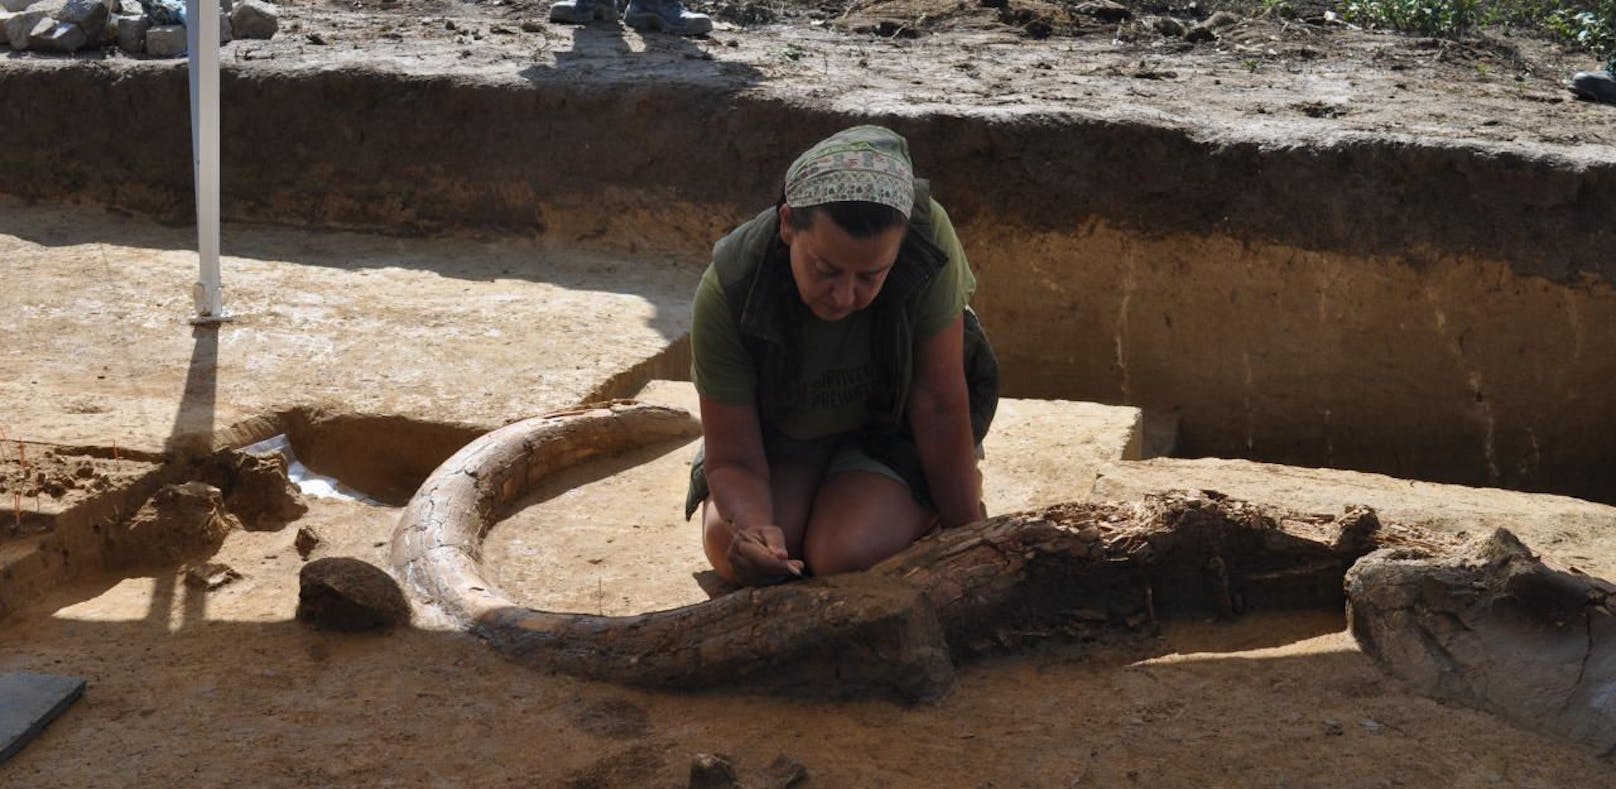 Steinzeit-Schlachtplatz in A5-Baustelle entdeckt